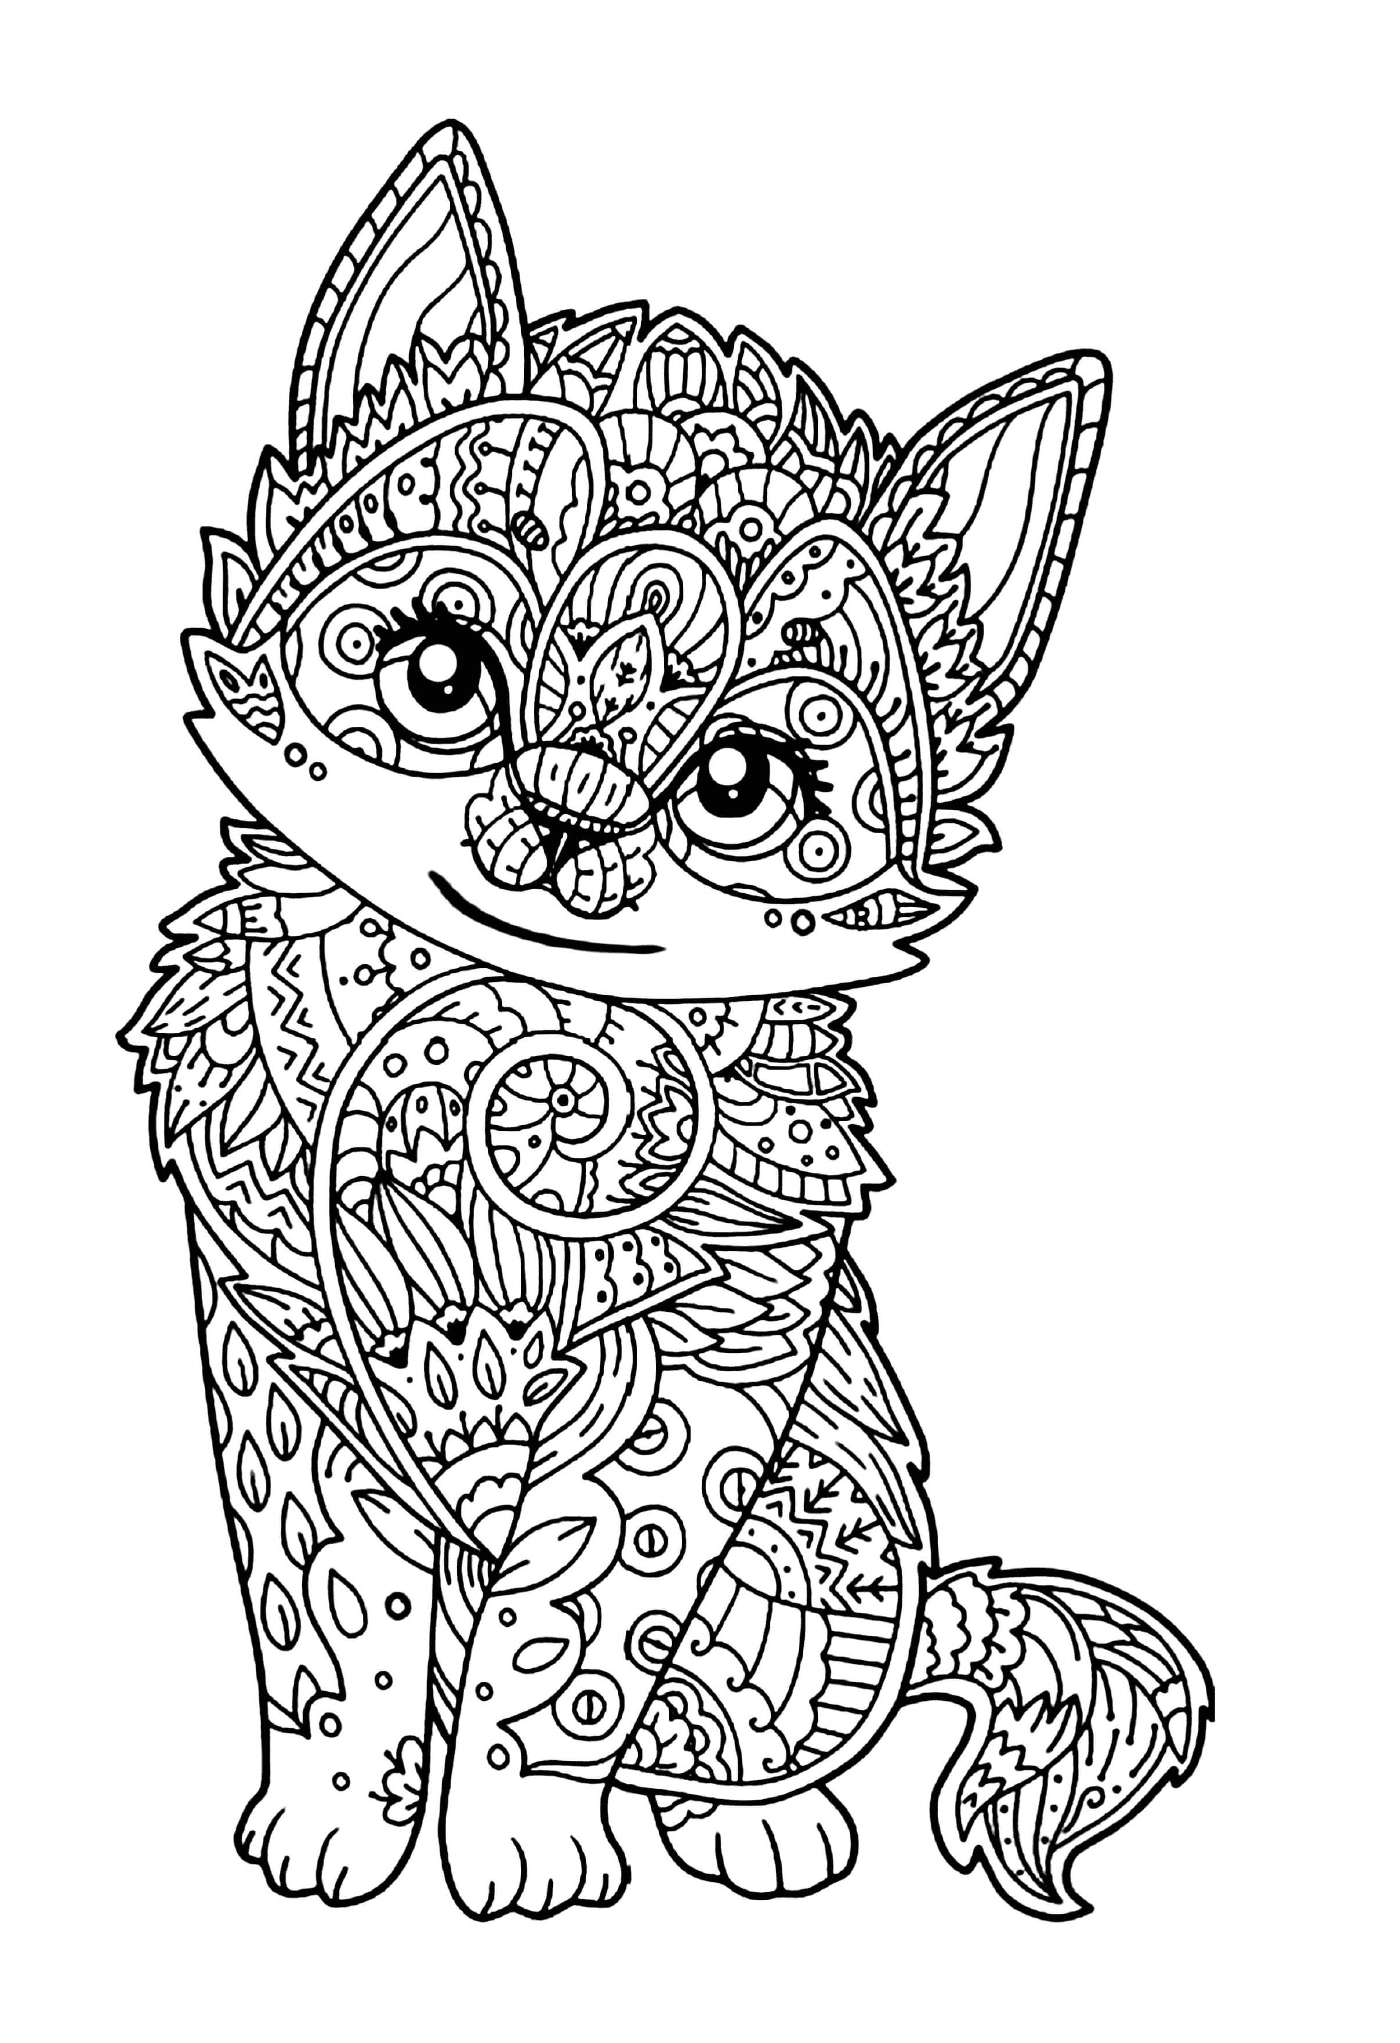  Um gatinho bonito adulto mandala 